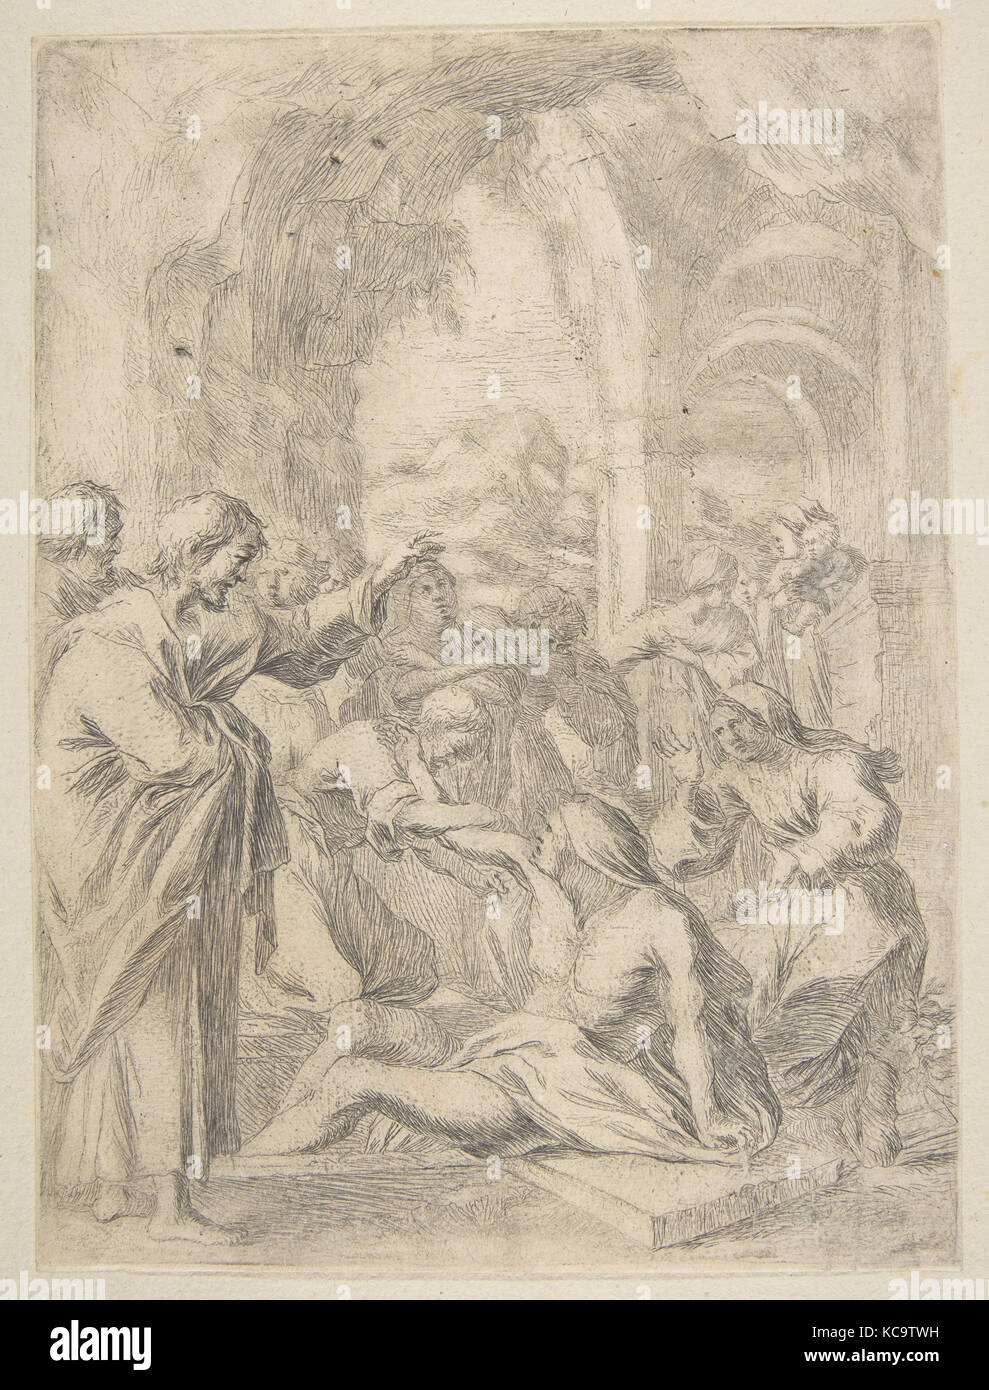 Raising of Lazarus, Attributed to Laurent de La Hyre, 17th century Stock Photo